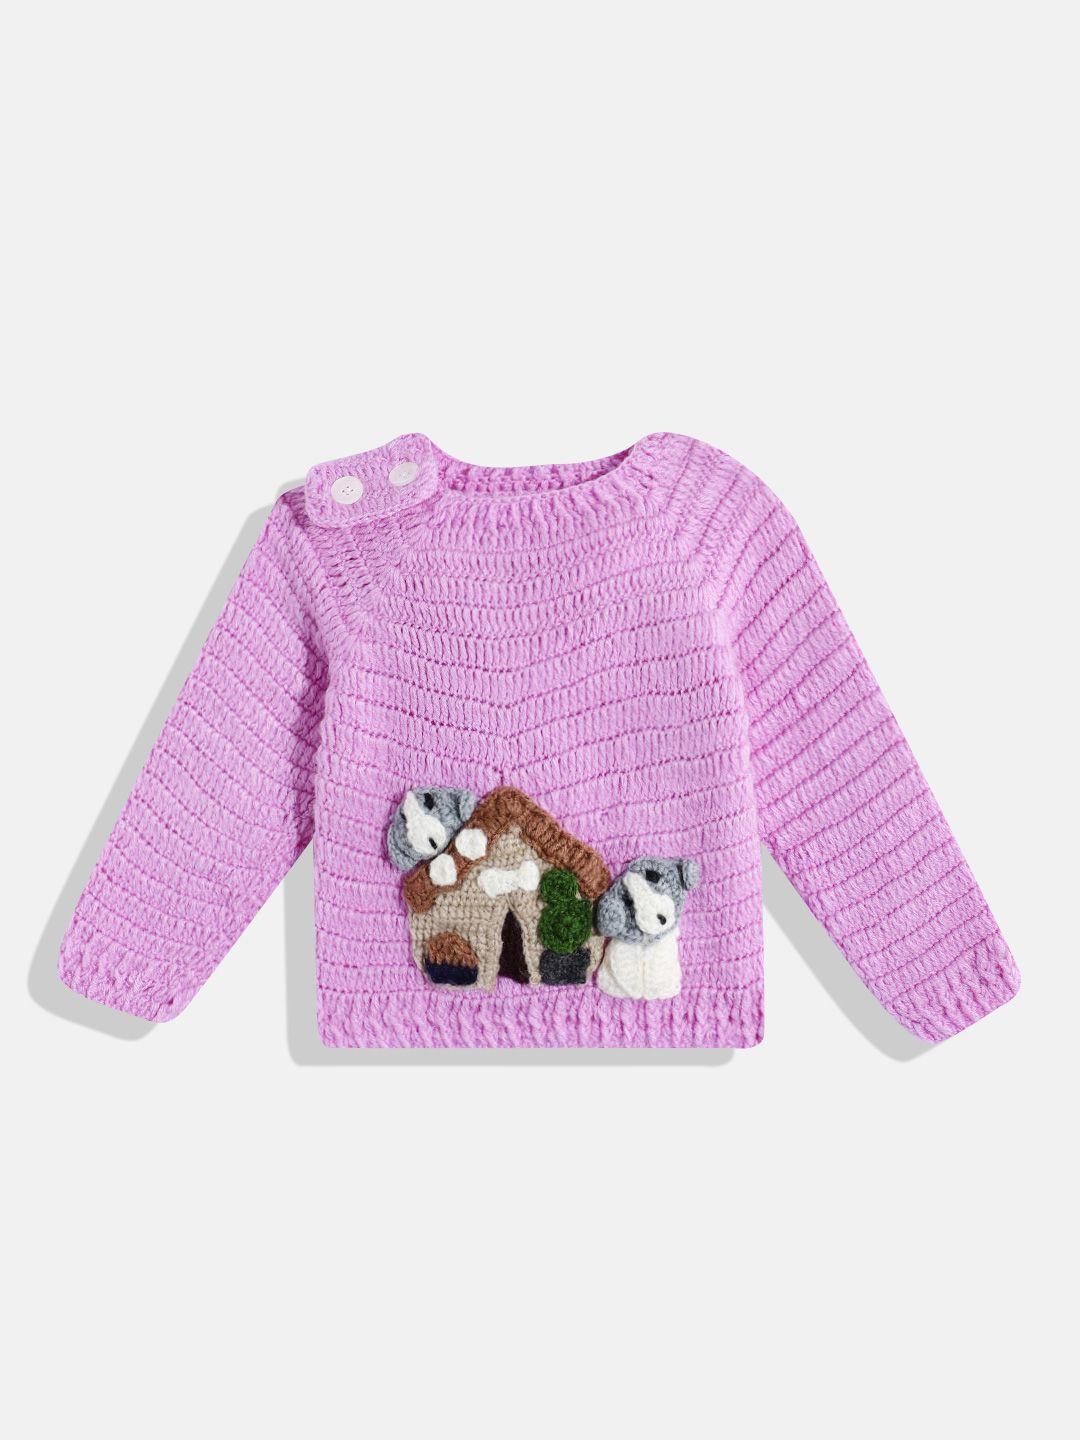 chutput-kids-embroidered-woollen-sweater-vest